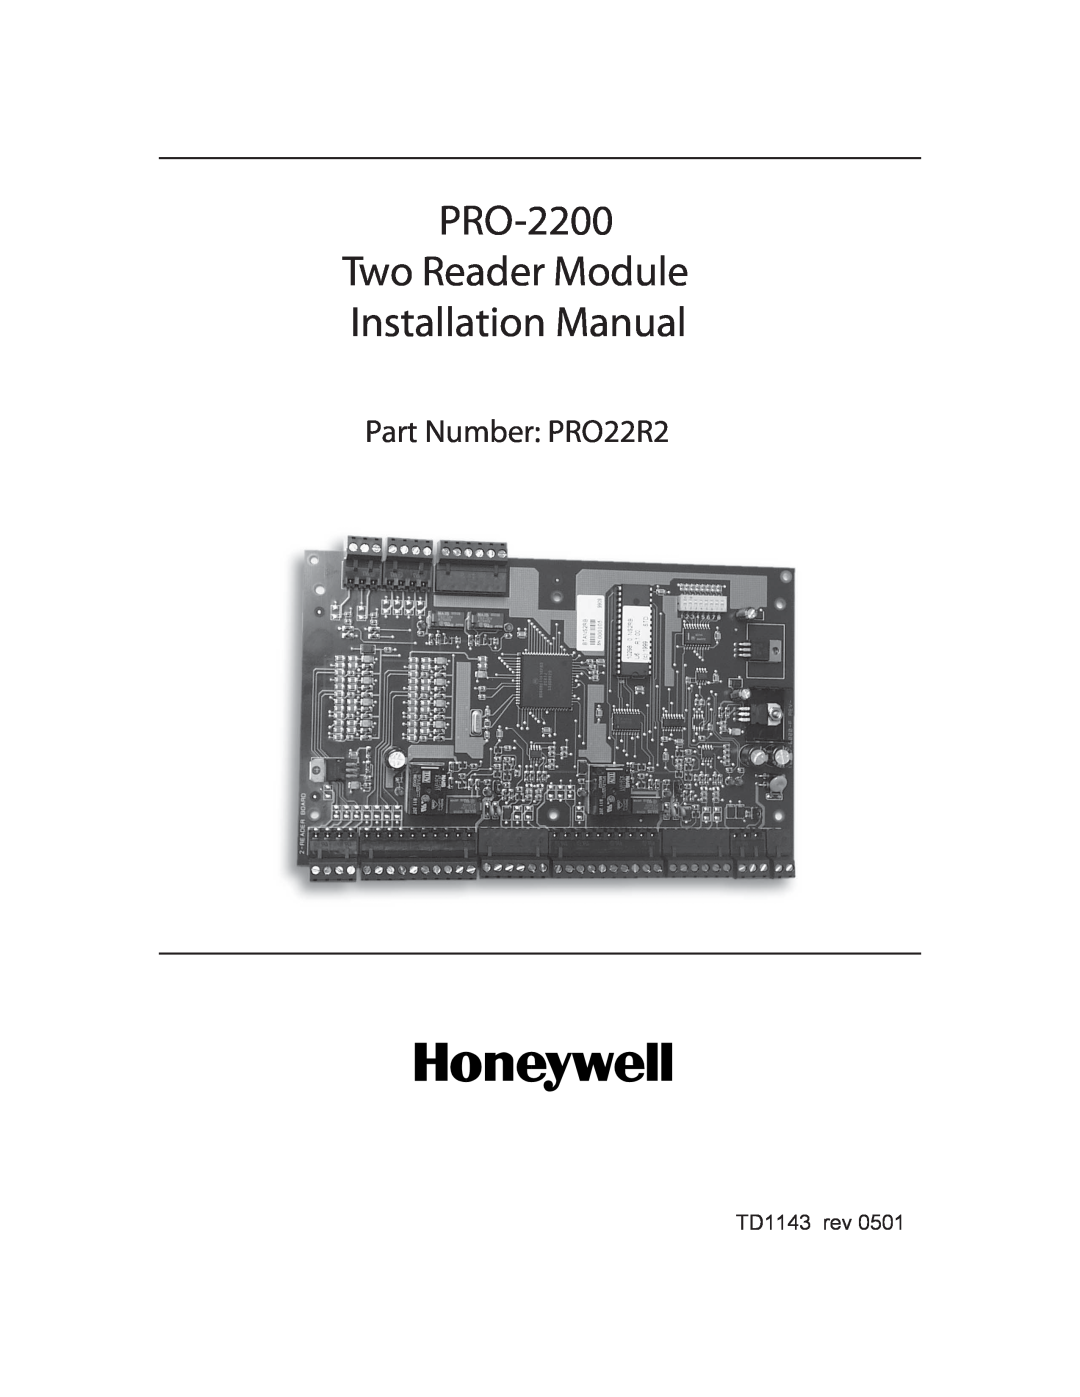 Honeywell installation manual PRO-2200 One Reader Interface Installation Manual, Part Number PRO22R1, TD1147 rev0601 